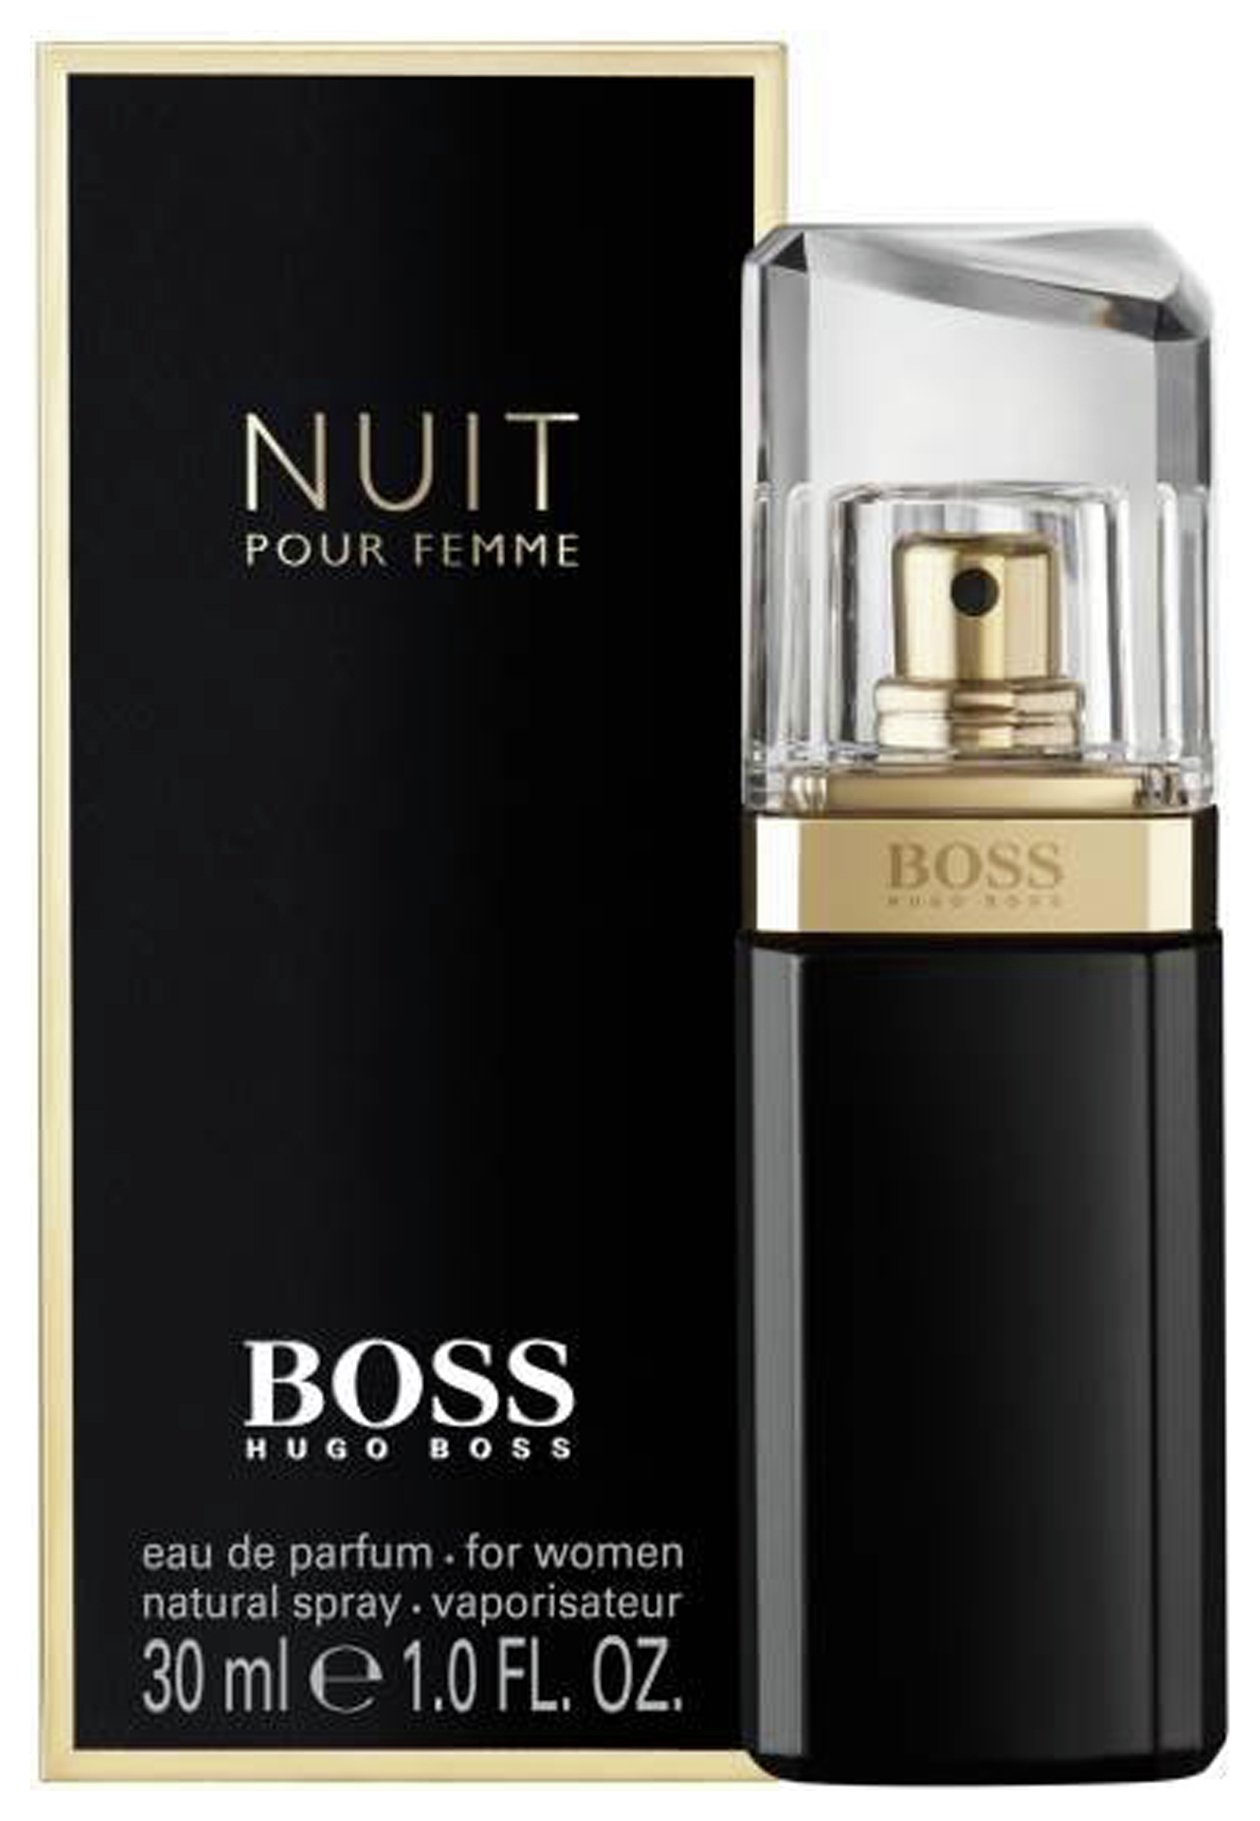 Boss Nuit Pour Femme Eau de Parfum for Women - 30ml (7060407) | Argos ...